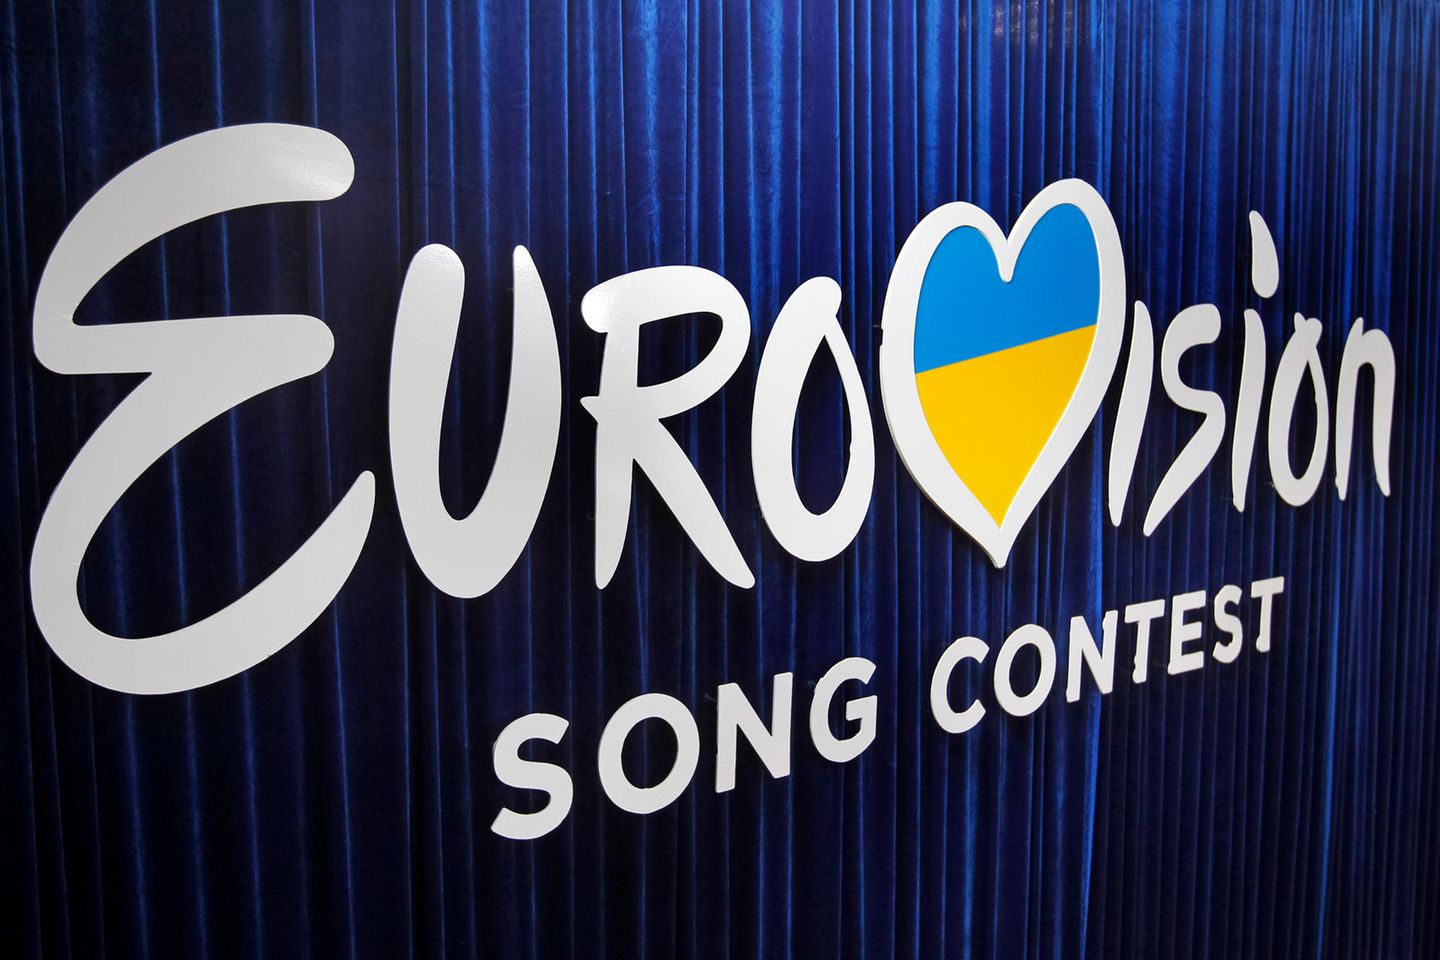 Der Eurovison Song Contest 2020 fällt aus.